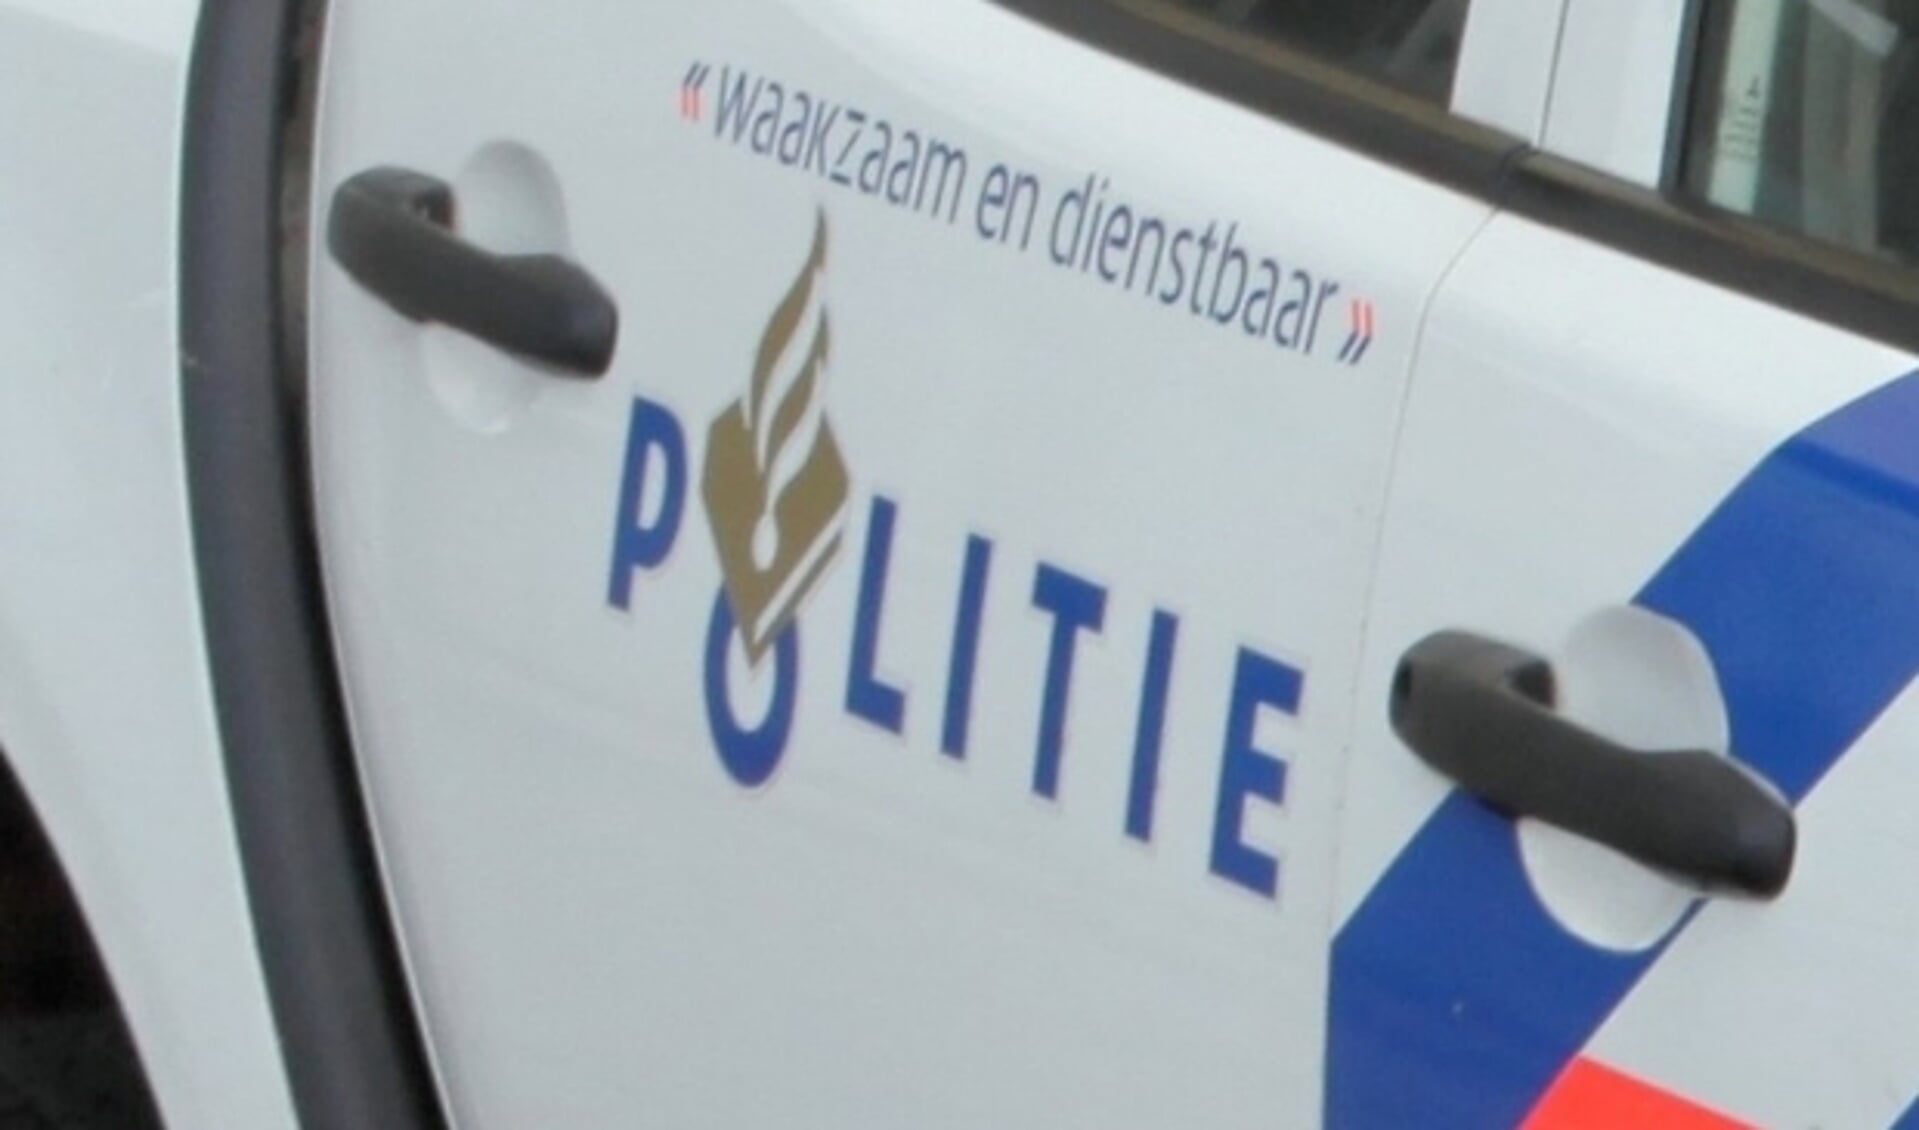 De politie wist rottigheid in Waddinxveen te voorkomen.